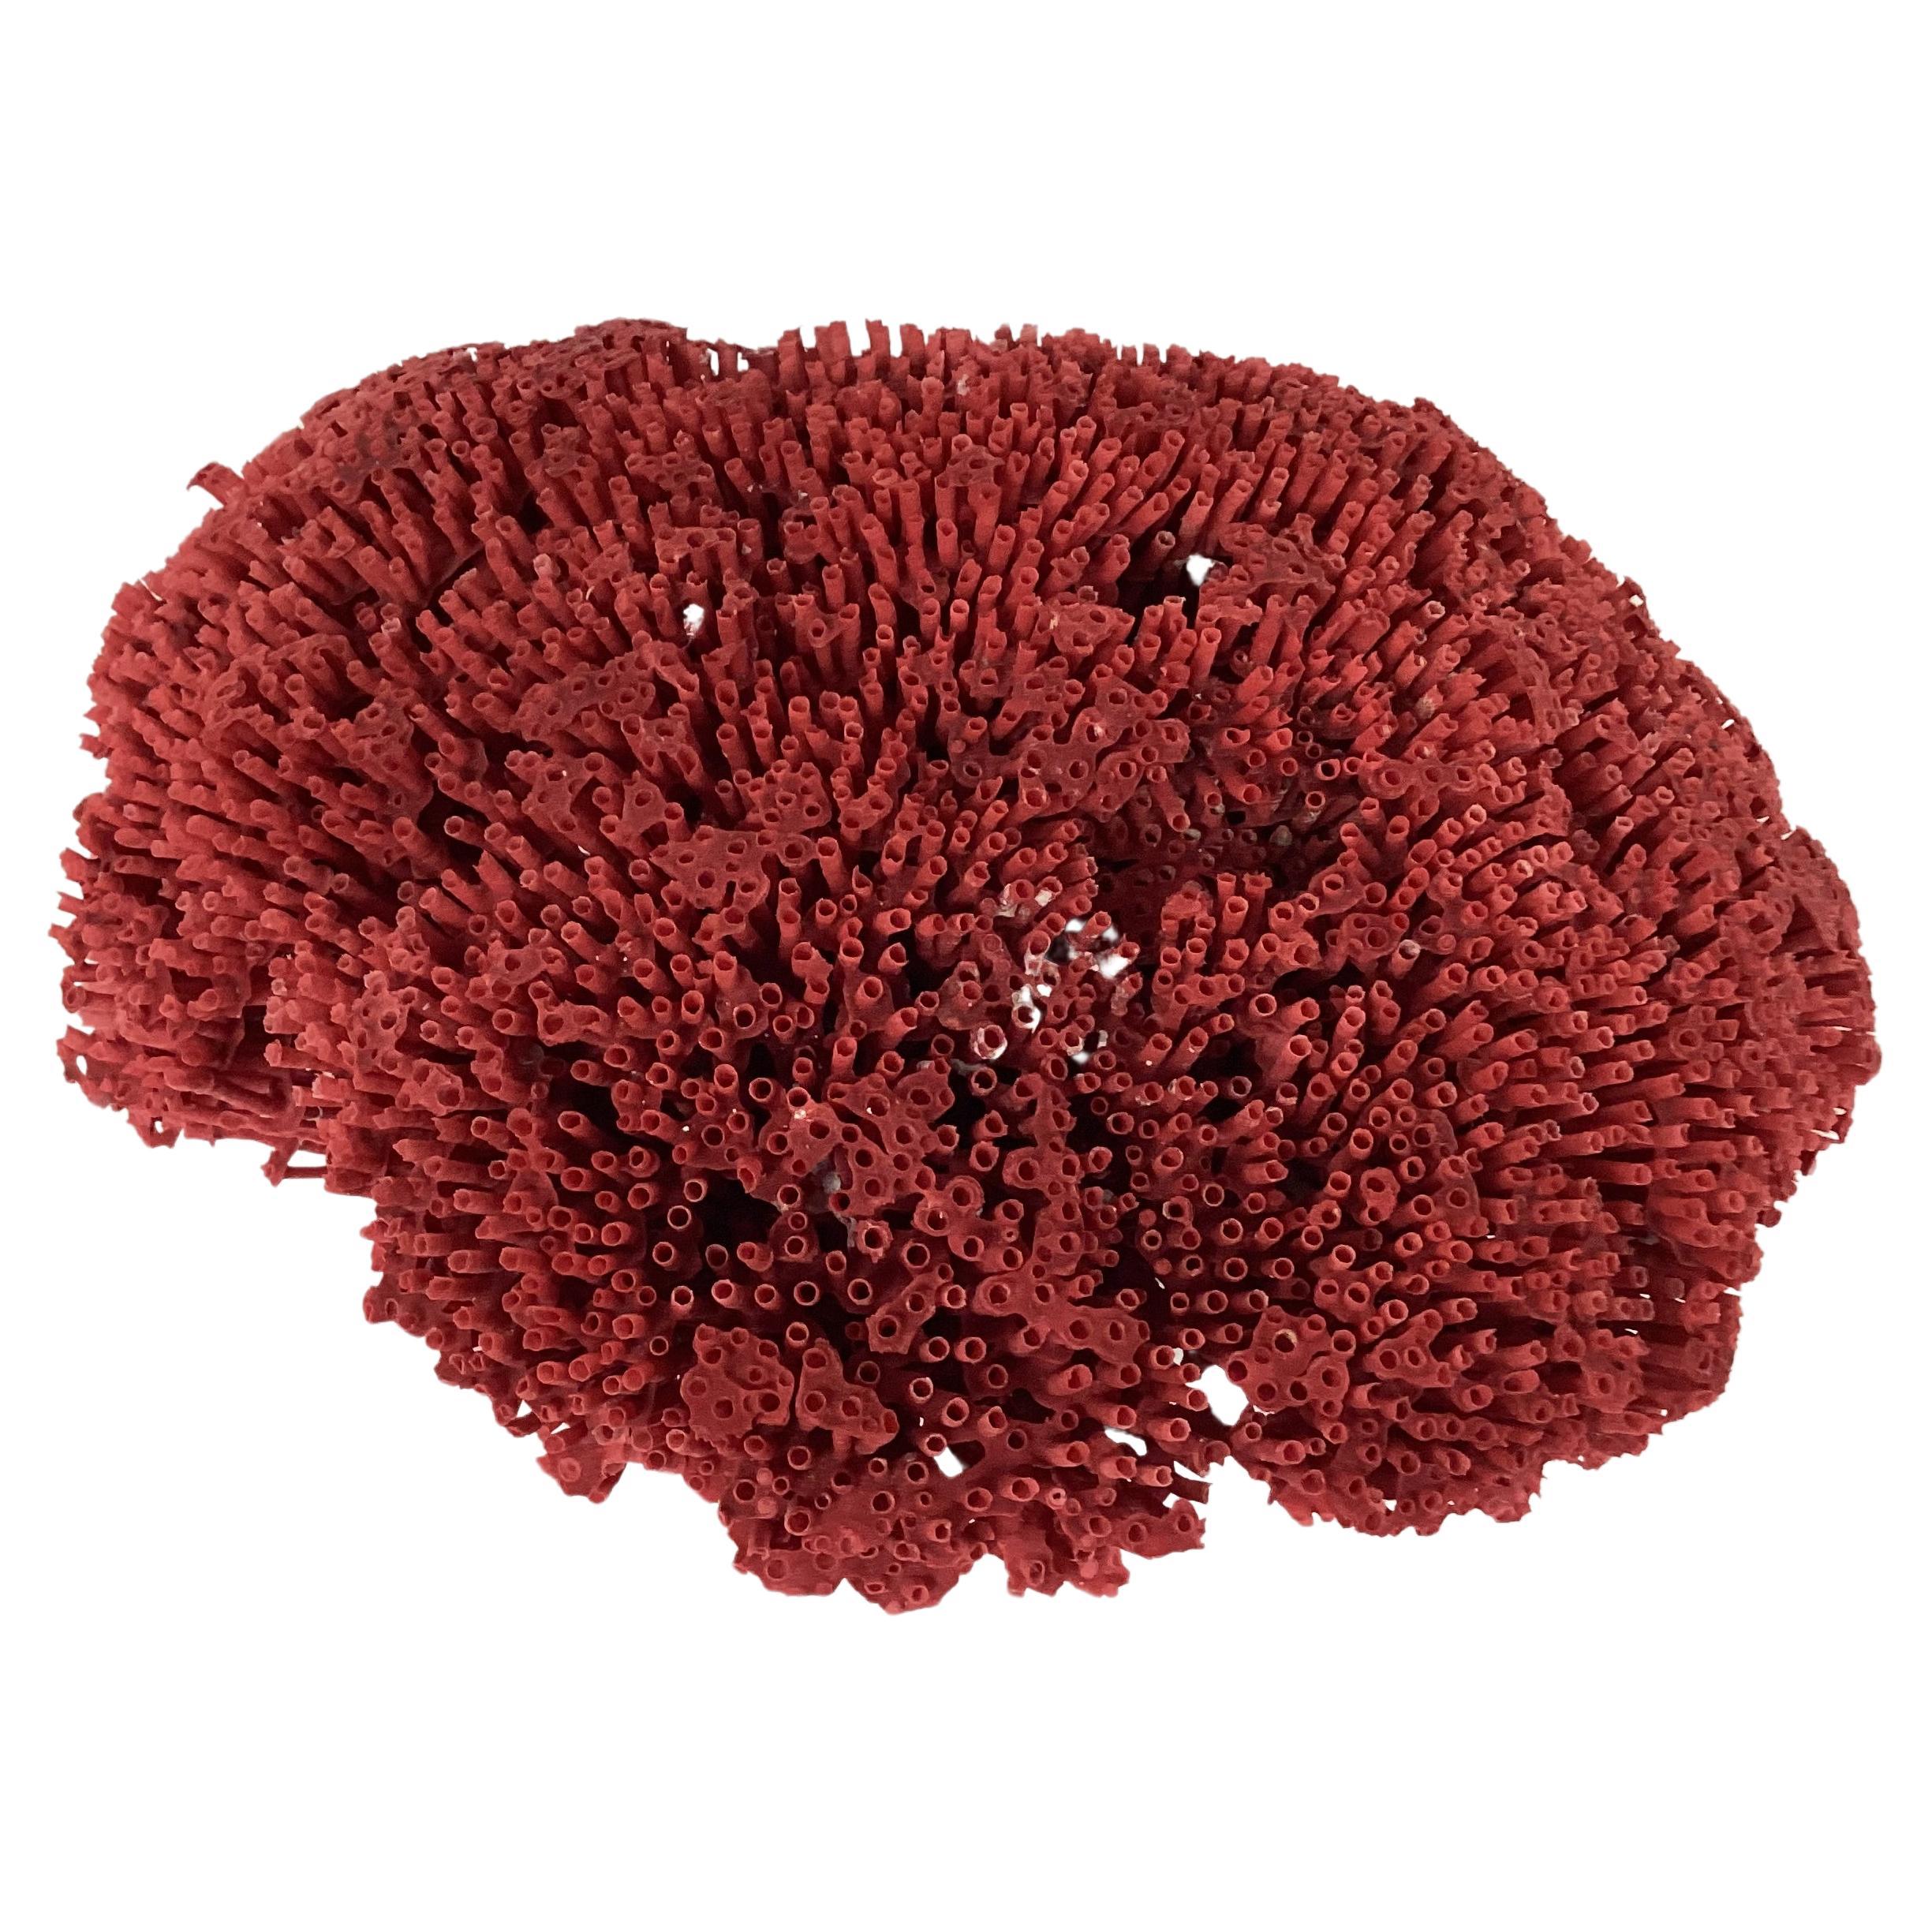 Natürliches Exemplar eines roten Korallenriffs. Die Farbe ist ein natürliches Rubinrot. Die flache Unterseite ermöglicht eine einfache Präsentation. Dieses Exemplar hat eine großartige Größe, um es in jeder Einrichtung zu präsentieren.